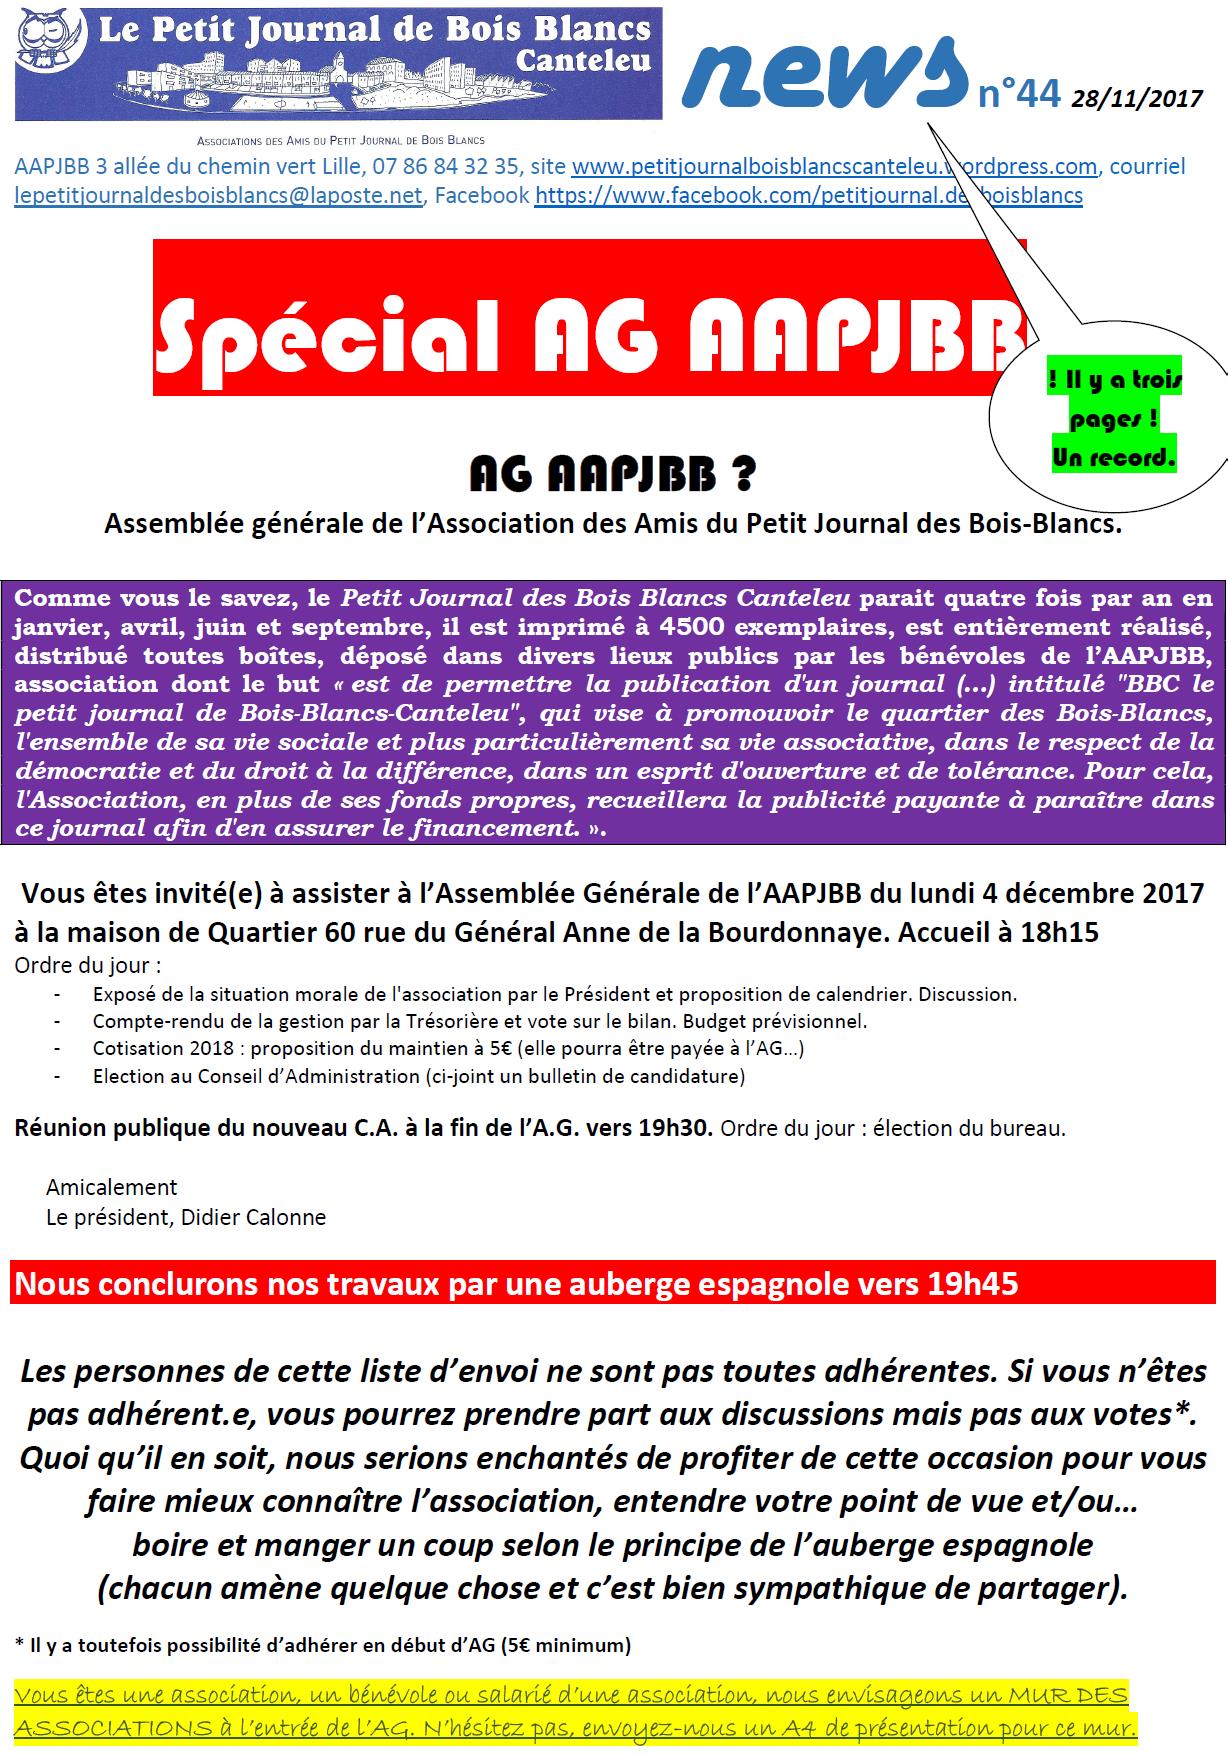 news 44 2017 11 28 spécial AG P1